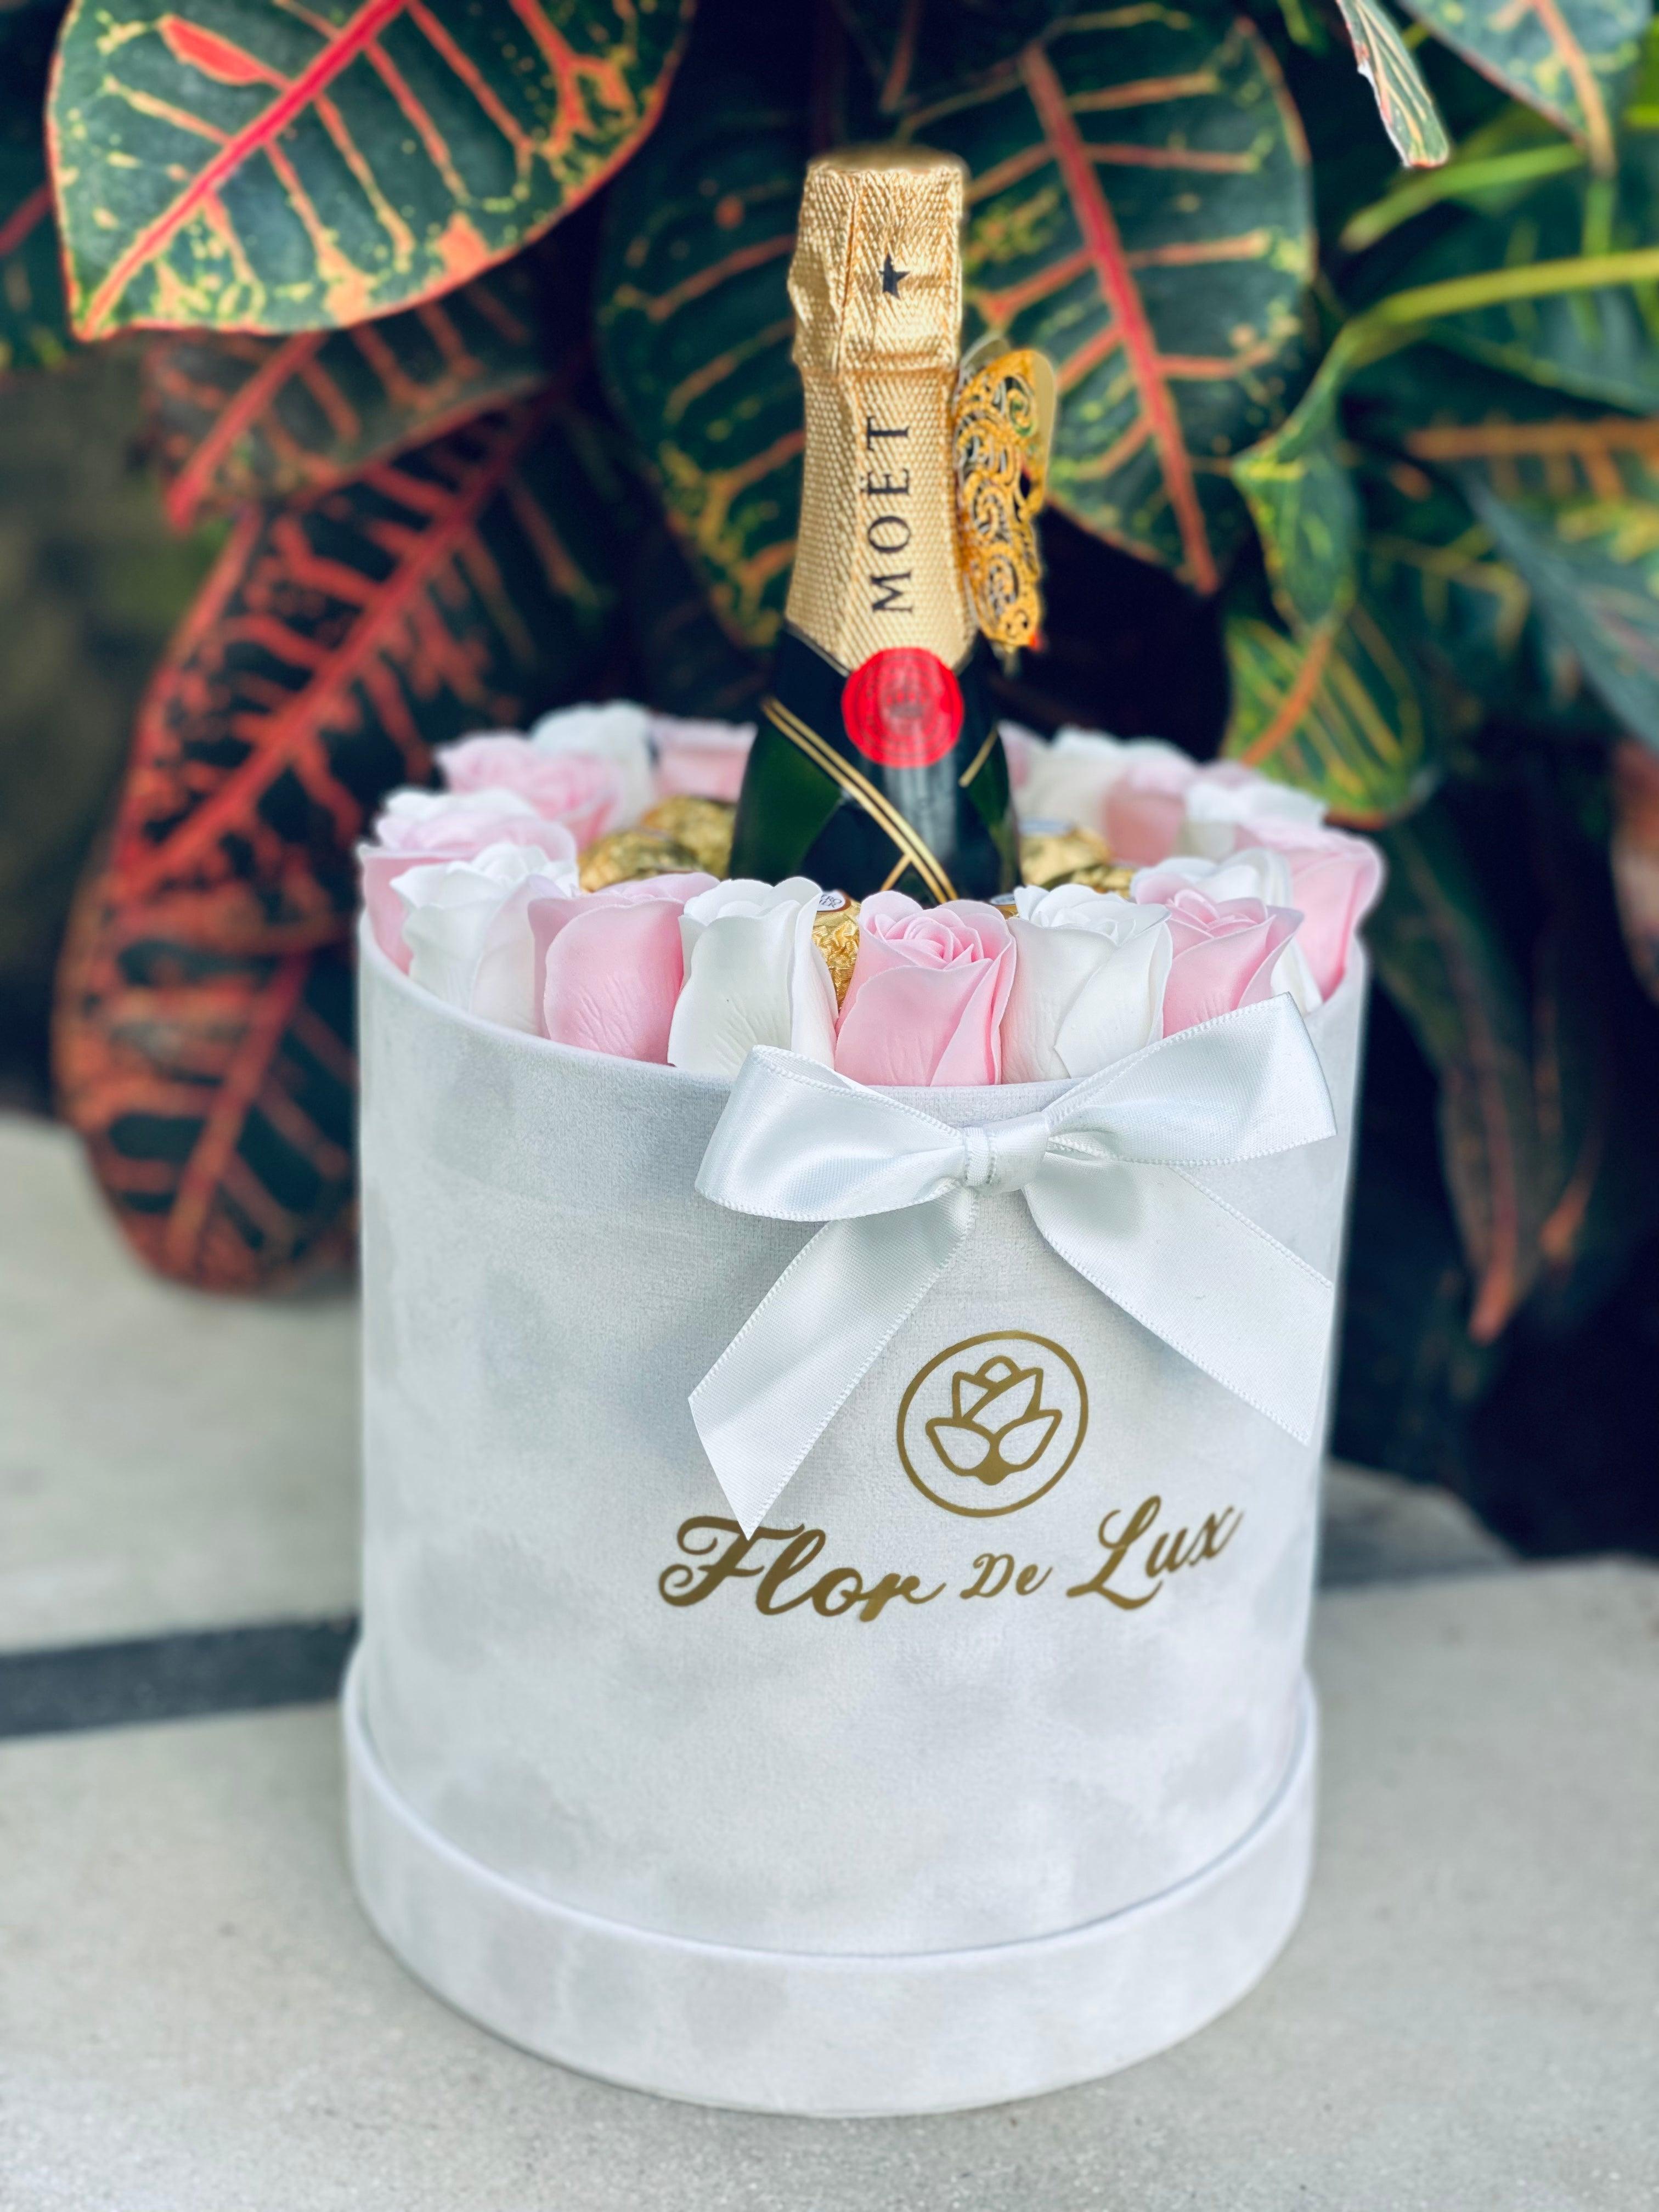 De Lux Sweet Scent Gift Box - Flor De Lux